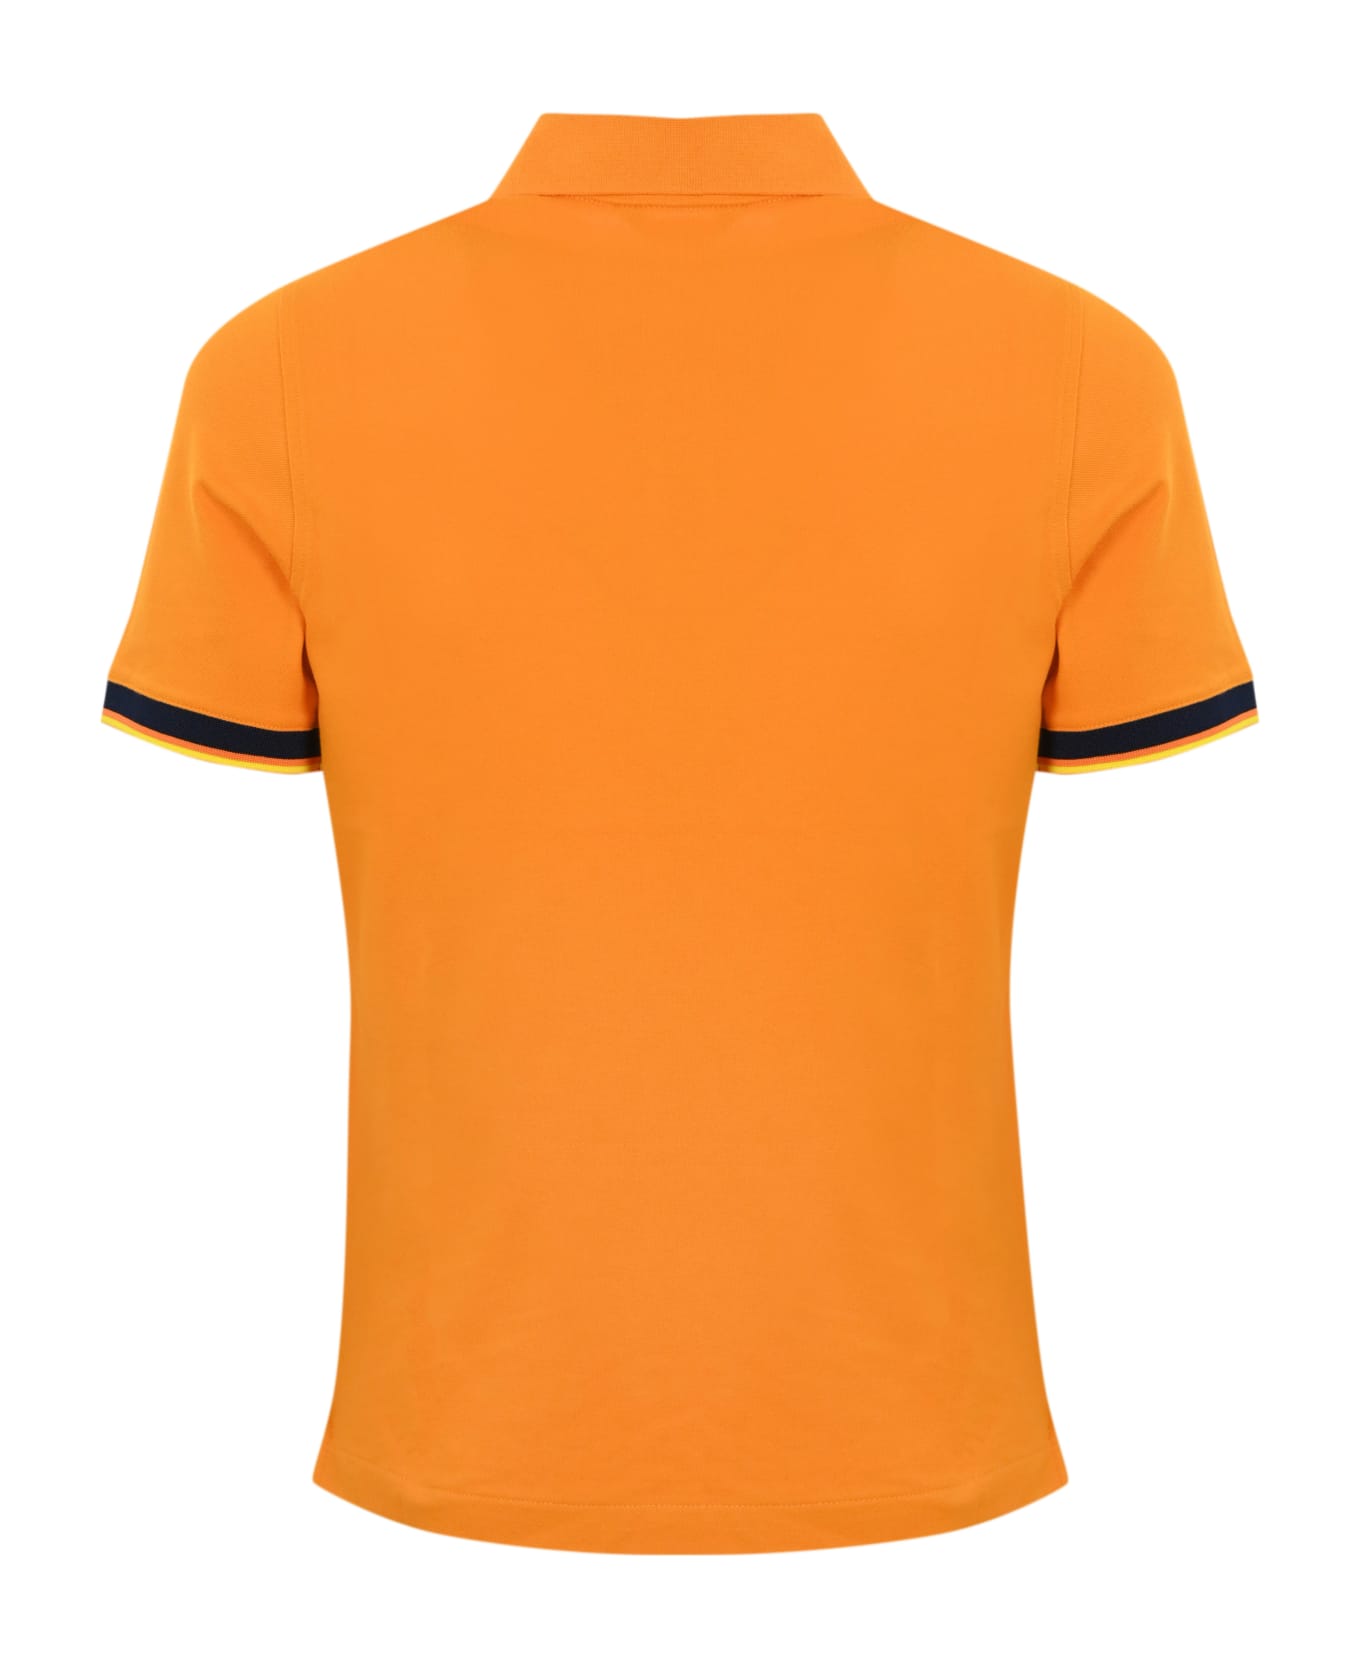 K-Way Vincent Polo Shirt - Arancio ポロシャツ